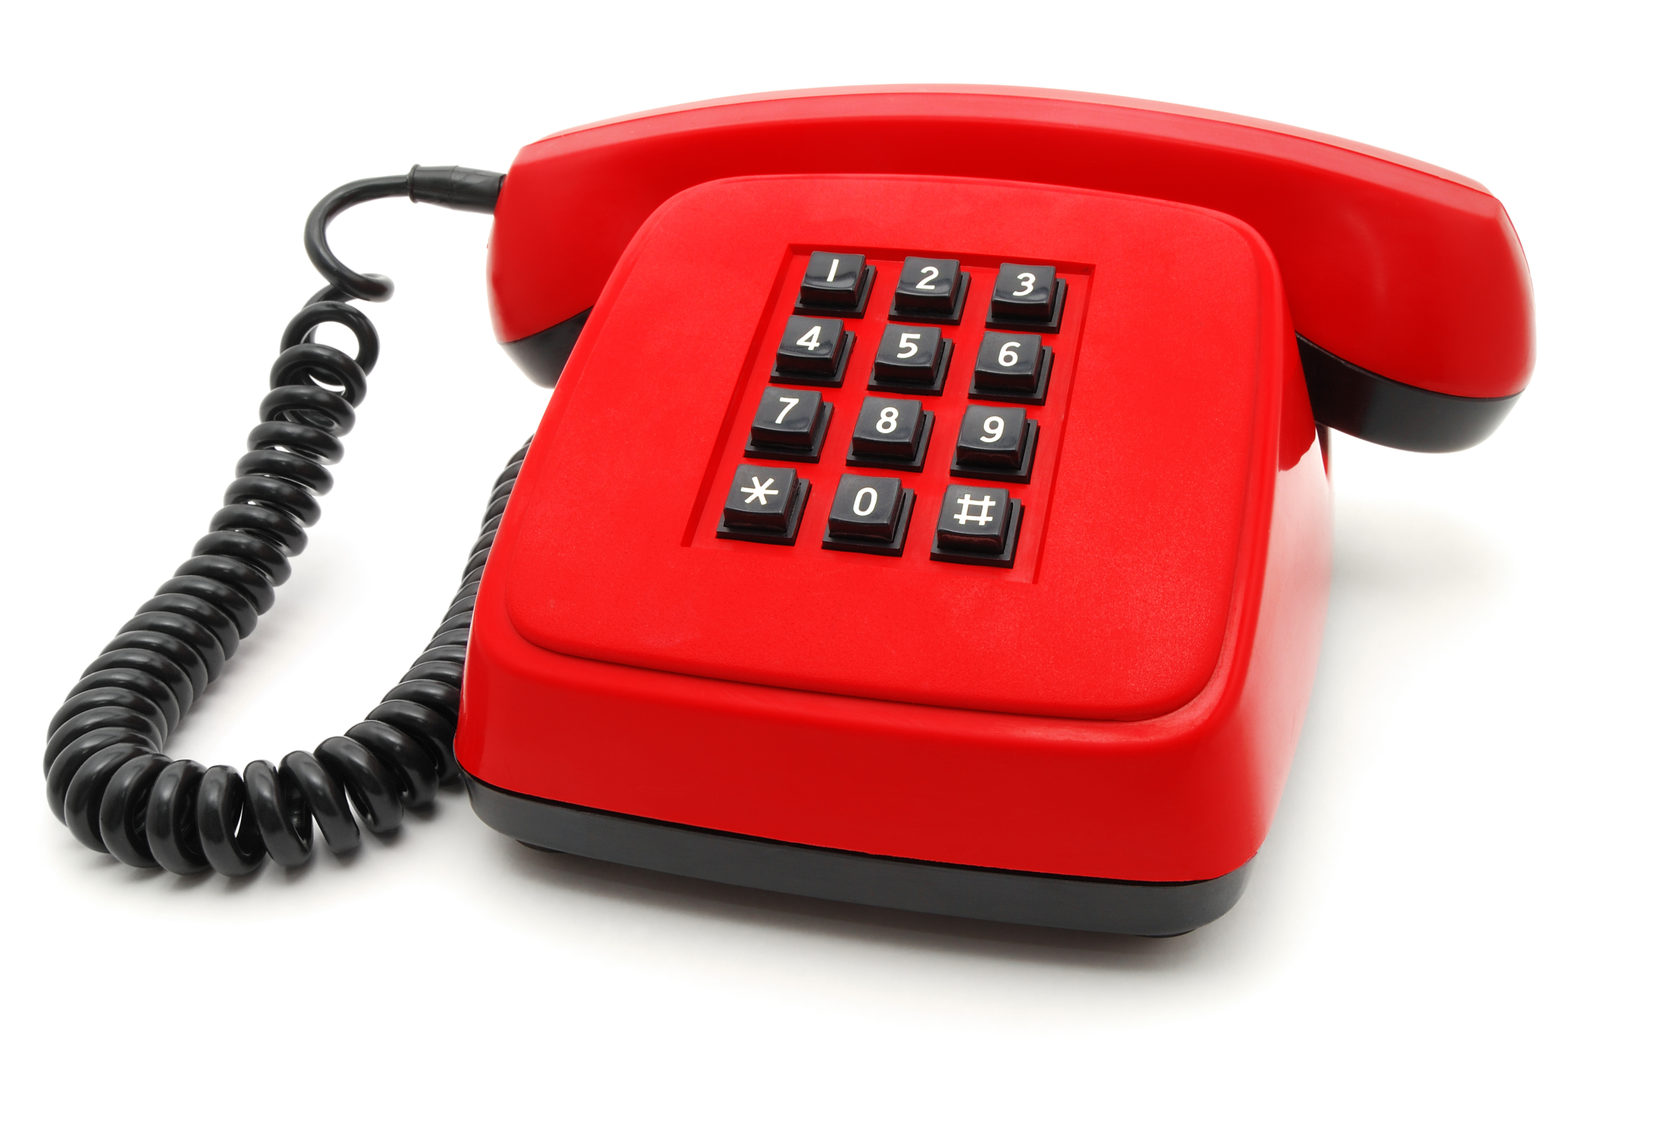 Красный телефон что значит. Красный телефон. Телефон домашний красный с кнопками. Телефон с красной кнопкой. Красный стационарный телефон с кнопками.